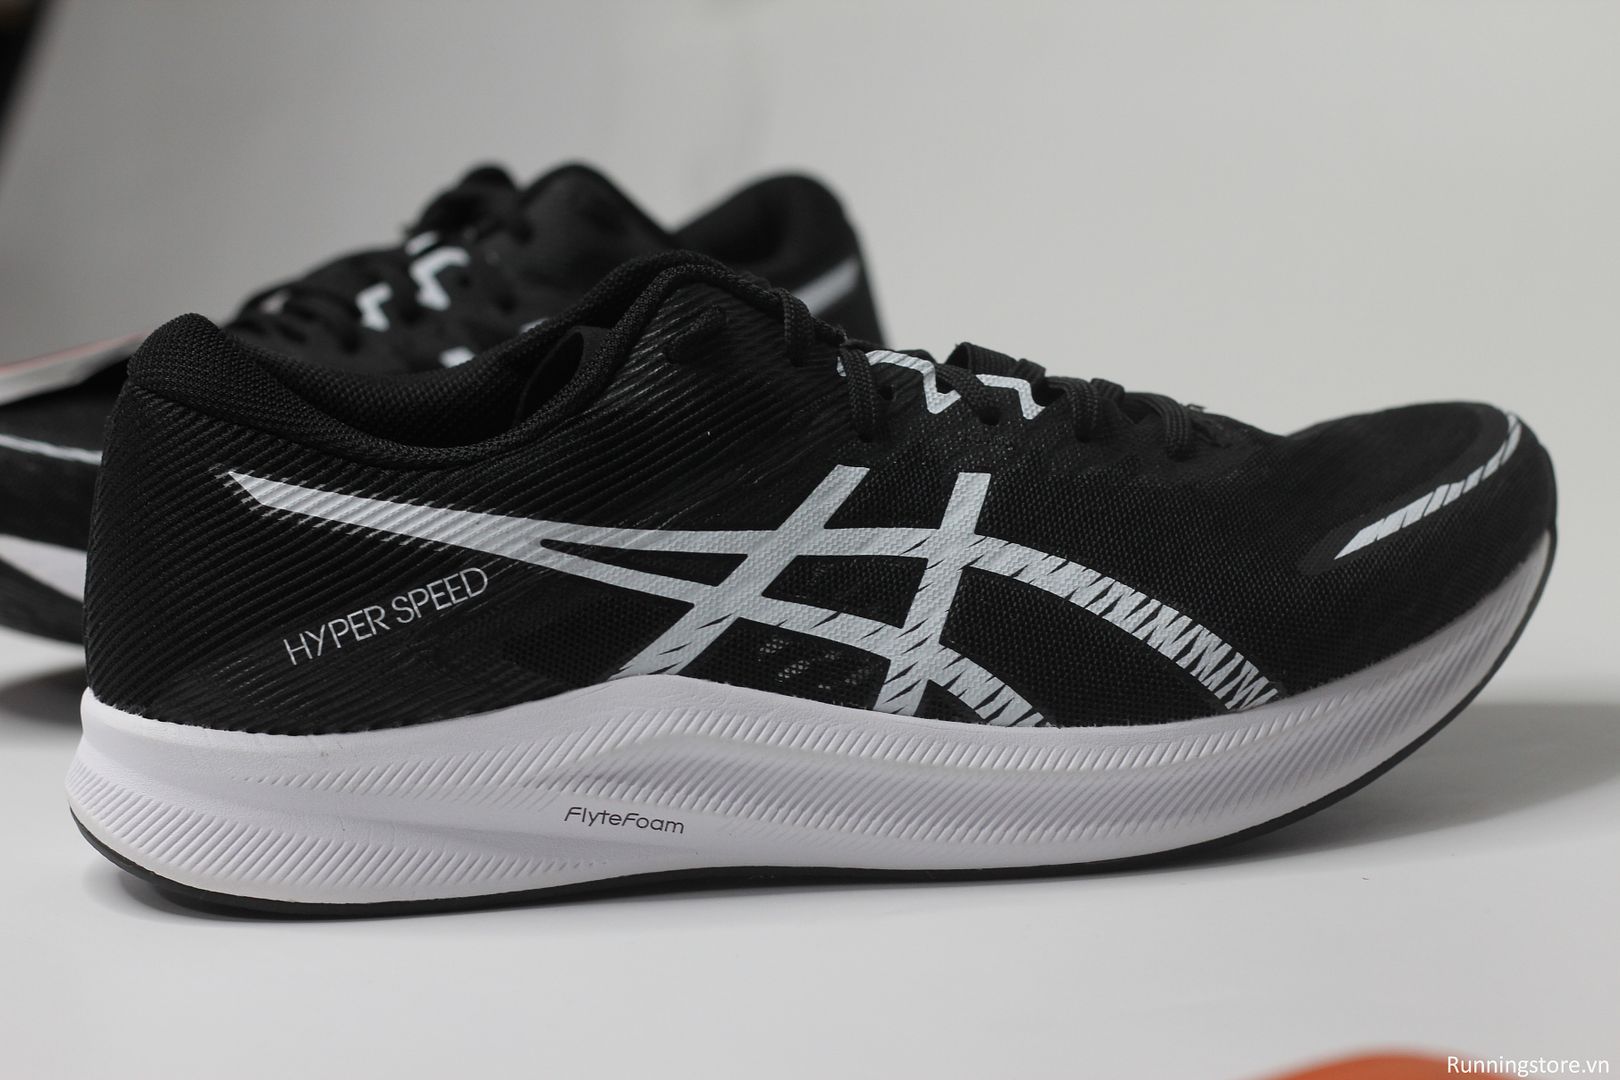 Giày chạy bộ Asics Hyper Speed 3 màu đen trắng 1011B702-001